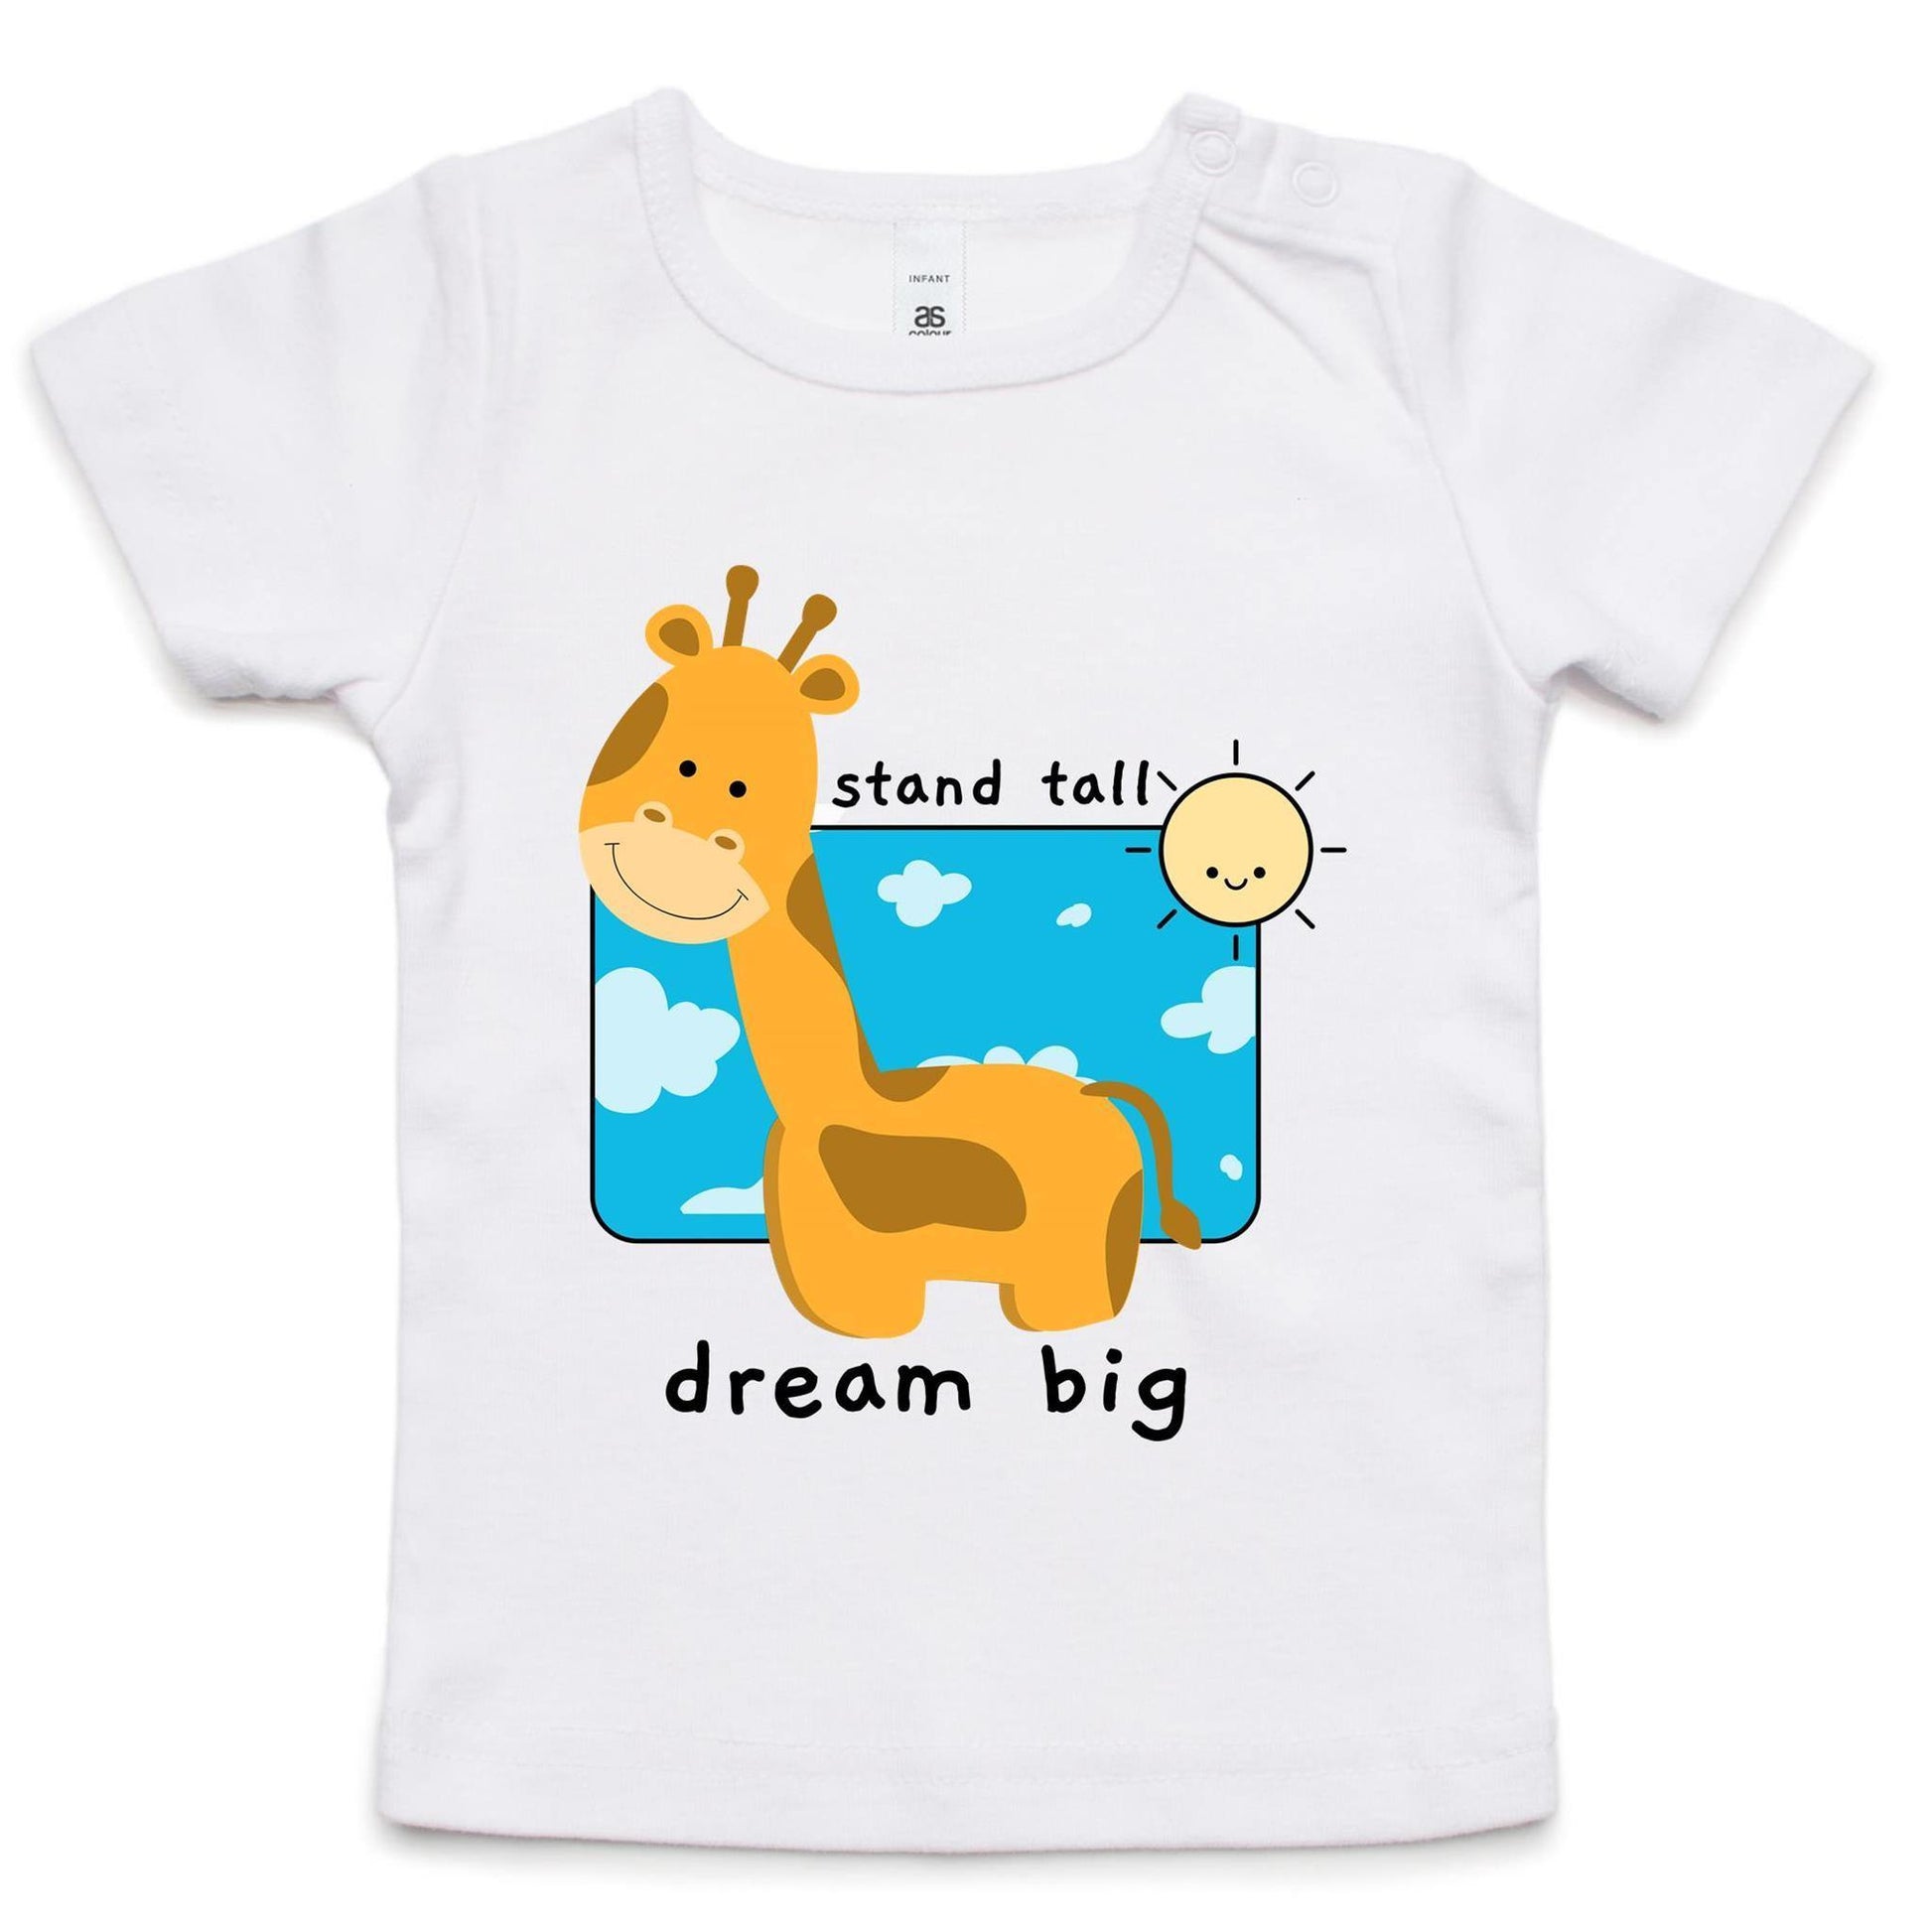 Stand Tall, Dream Big - Baby T-shirt White Baby T-shirt animal kids